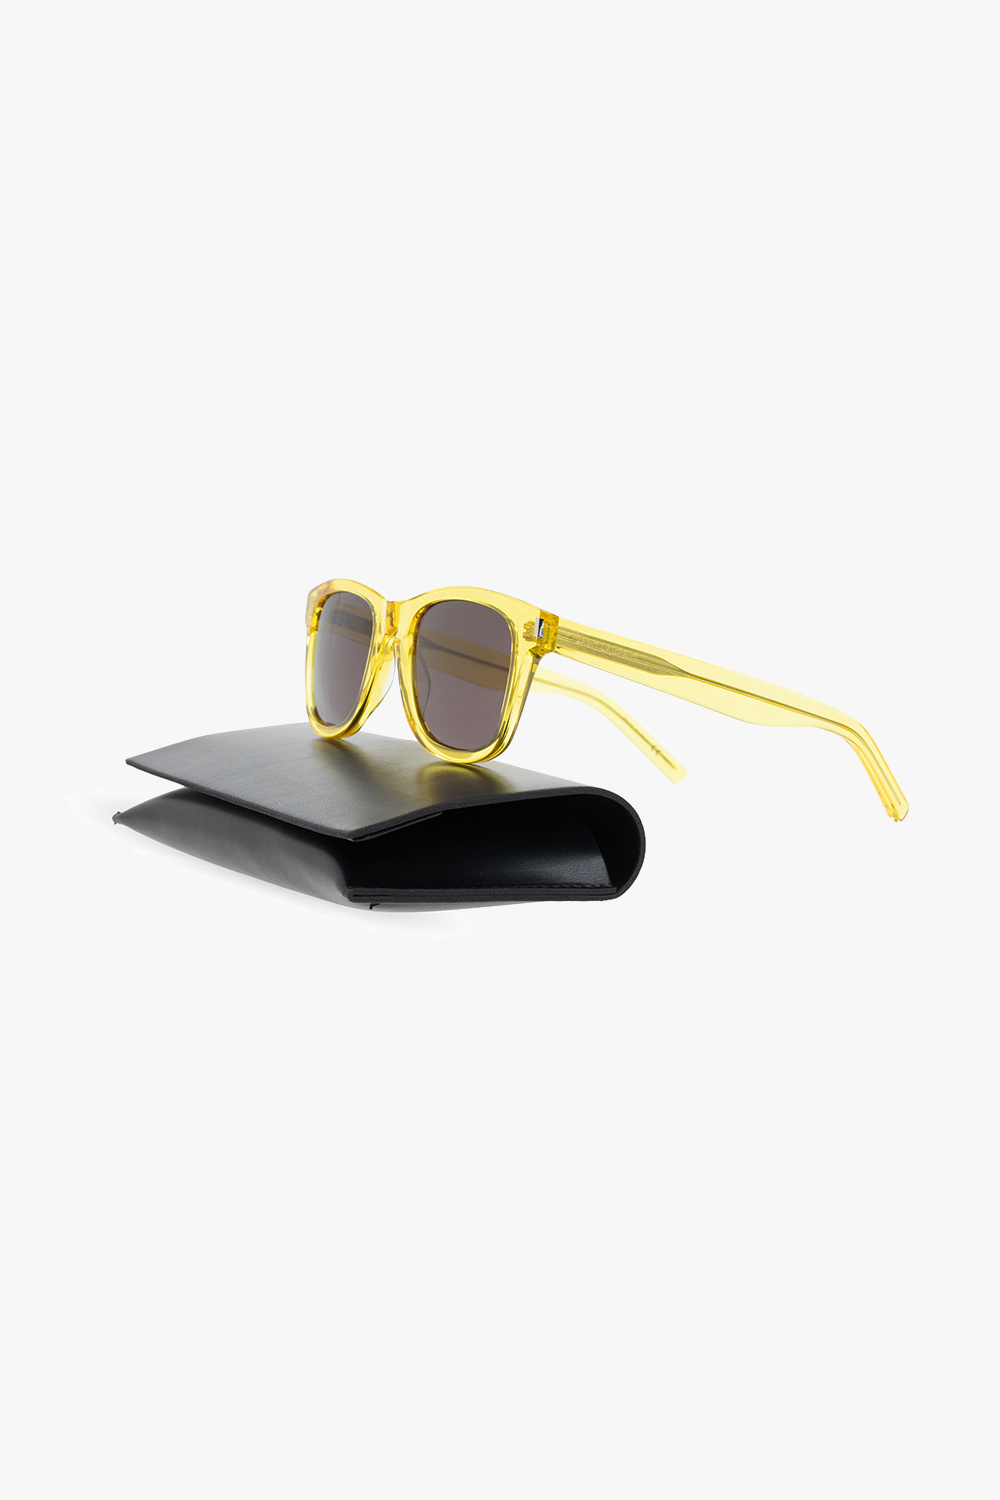 Louis Vuitton - LV Rise Round Sunglasses - Acetate - Black - Men - Luxury